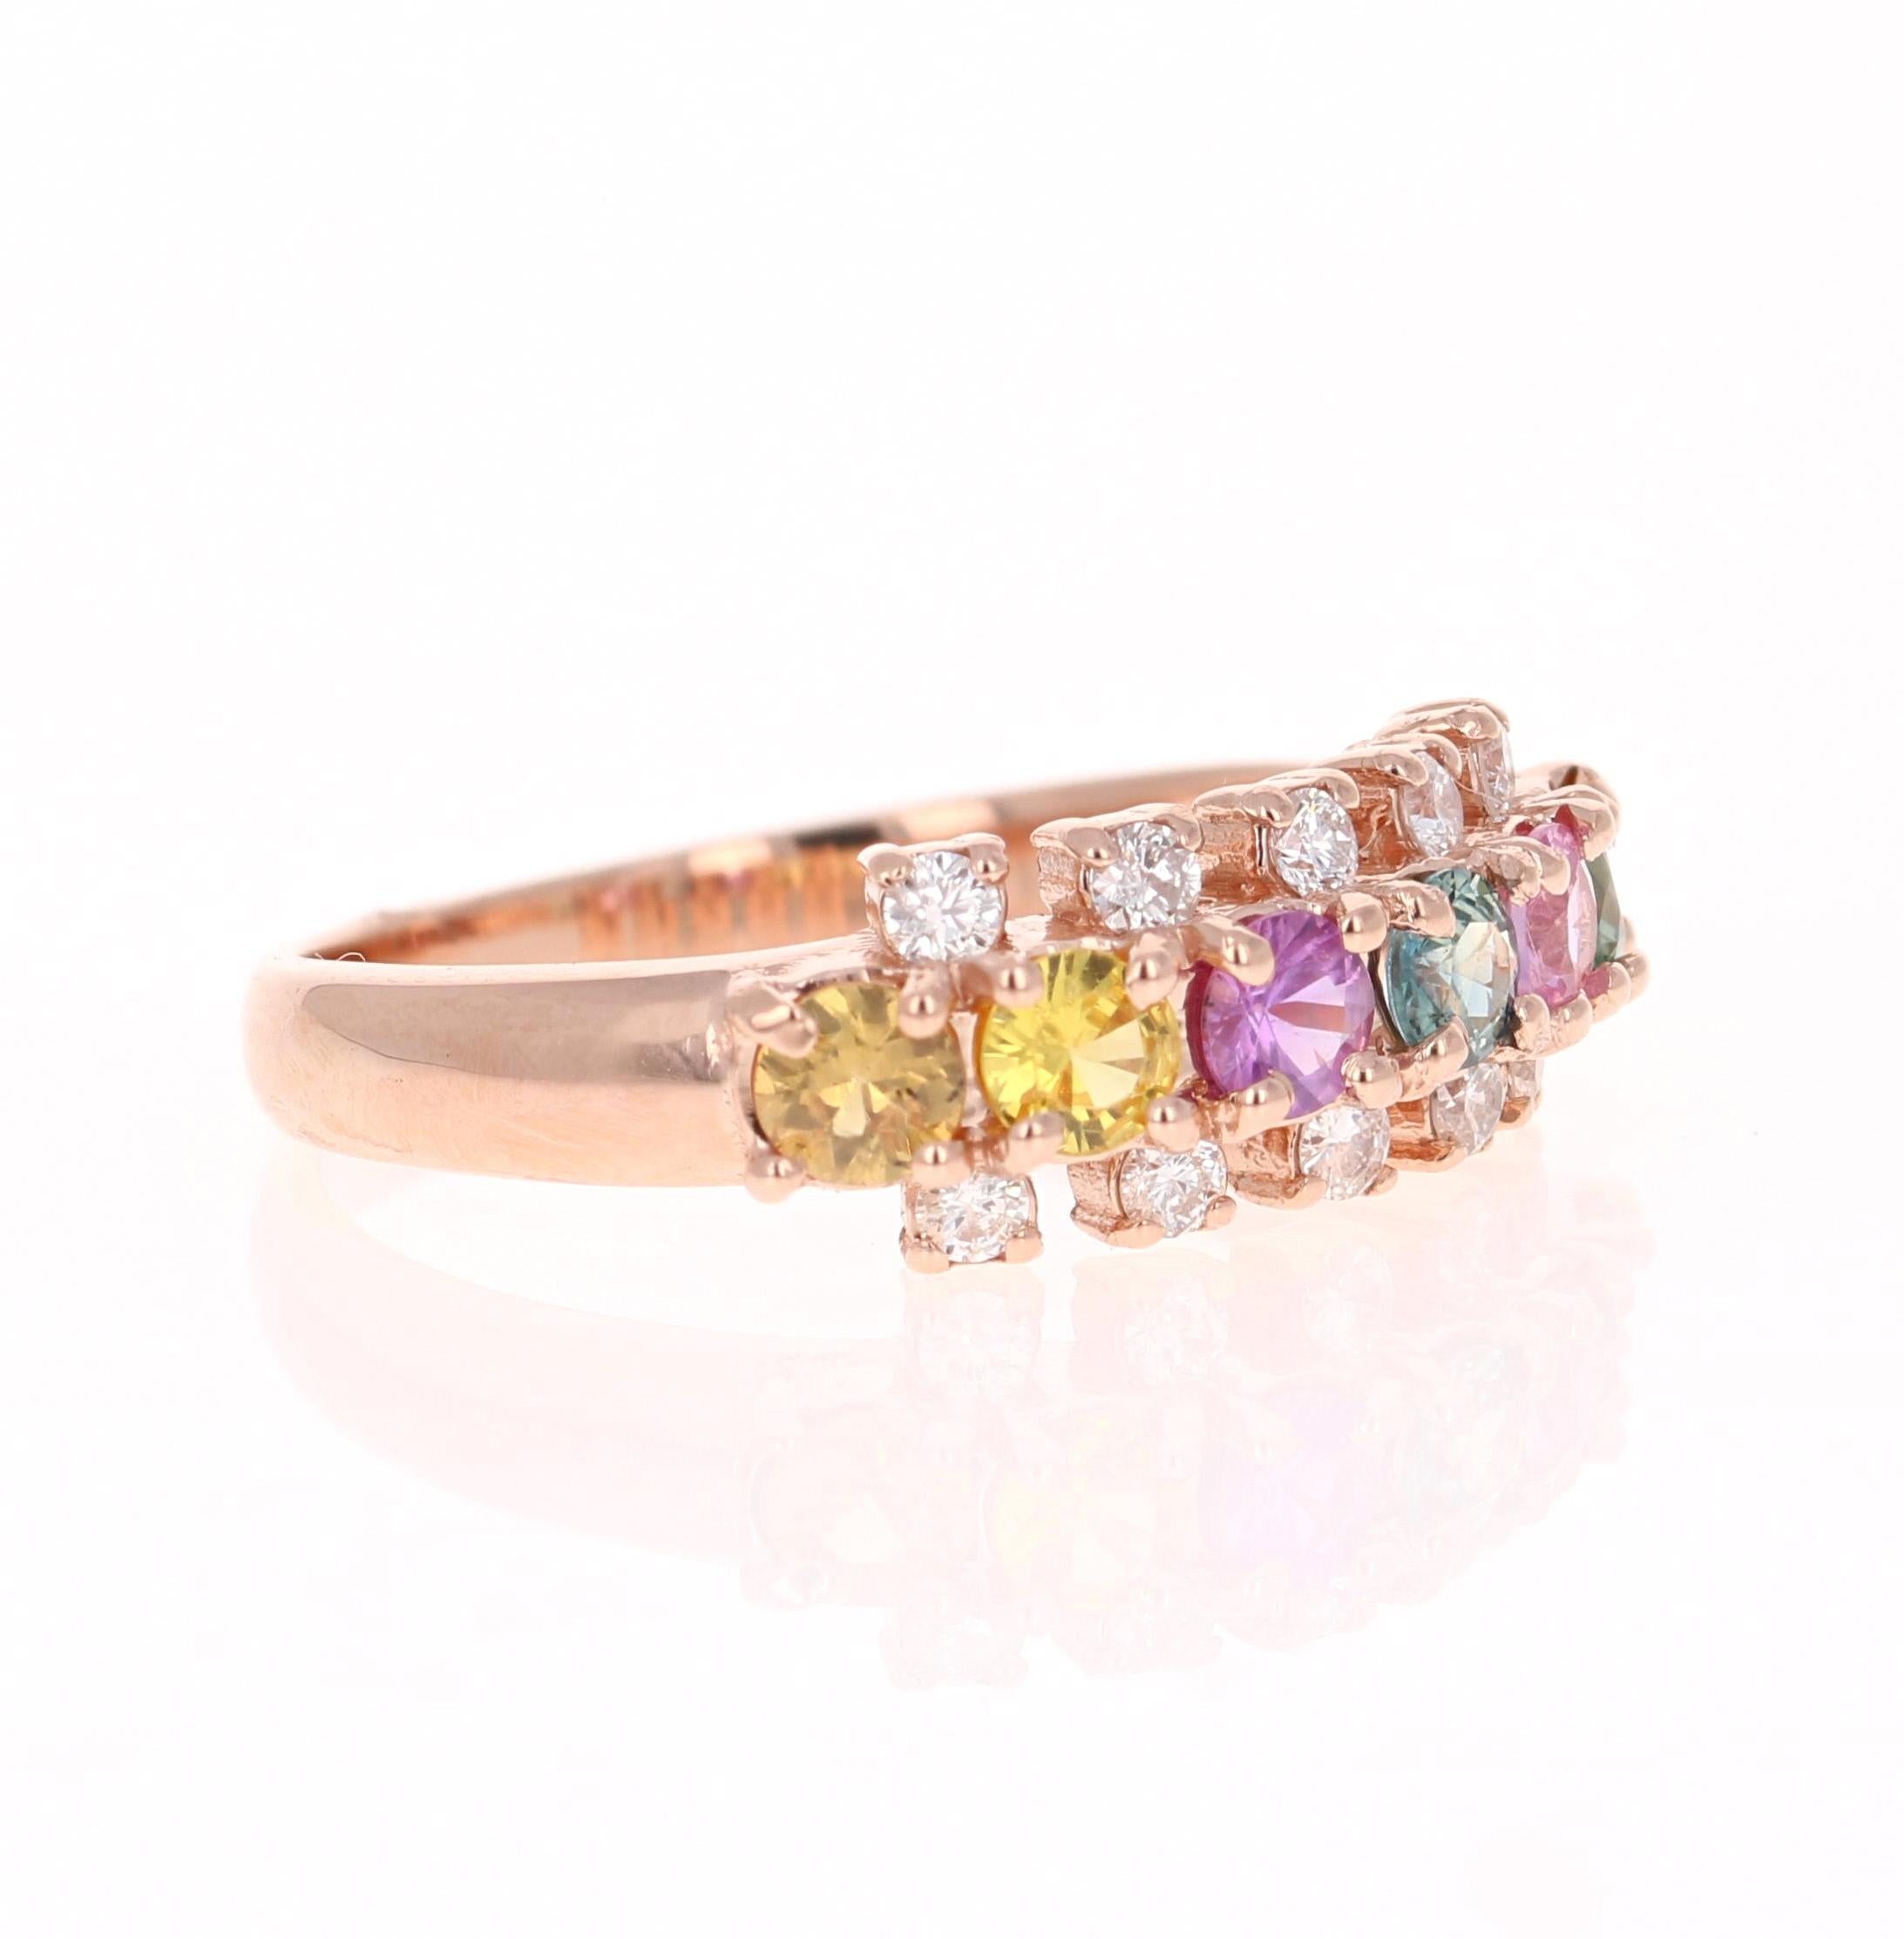 Schöner und einzigartiger Ring mit mehreren Saphiren und Diamanten

Dieser Ring hat 6 rund geschliffene natürliche mehrfarbige Saphire mit einem Gewicht von 1,01 Karat. Es hat auch 10 Rundschliff Diamanten, die 0,25 Karat wiegen. Reinheit: SI und